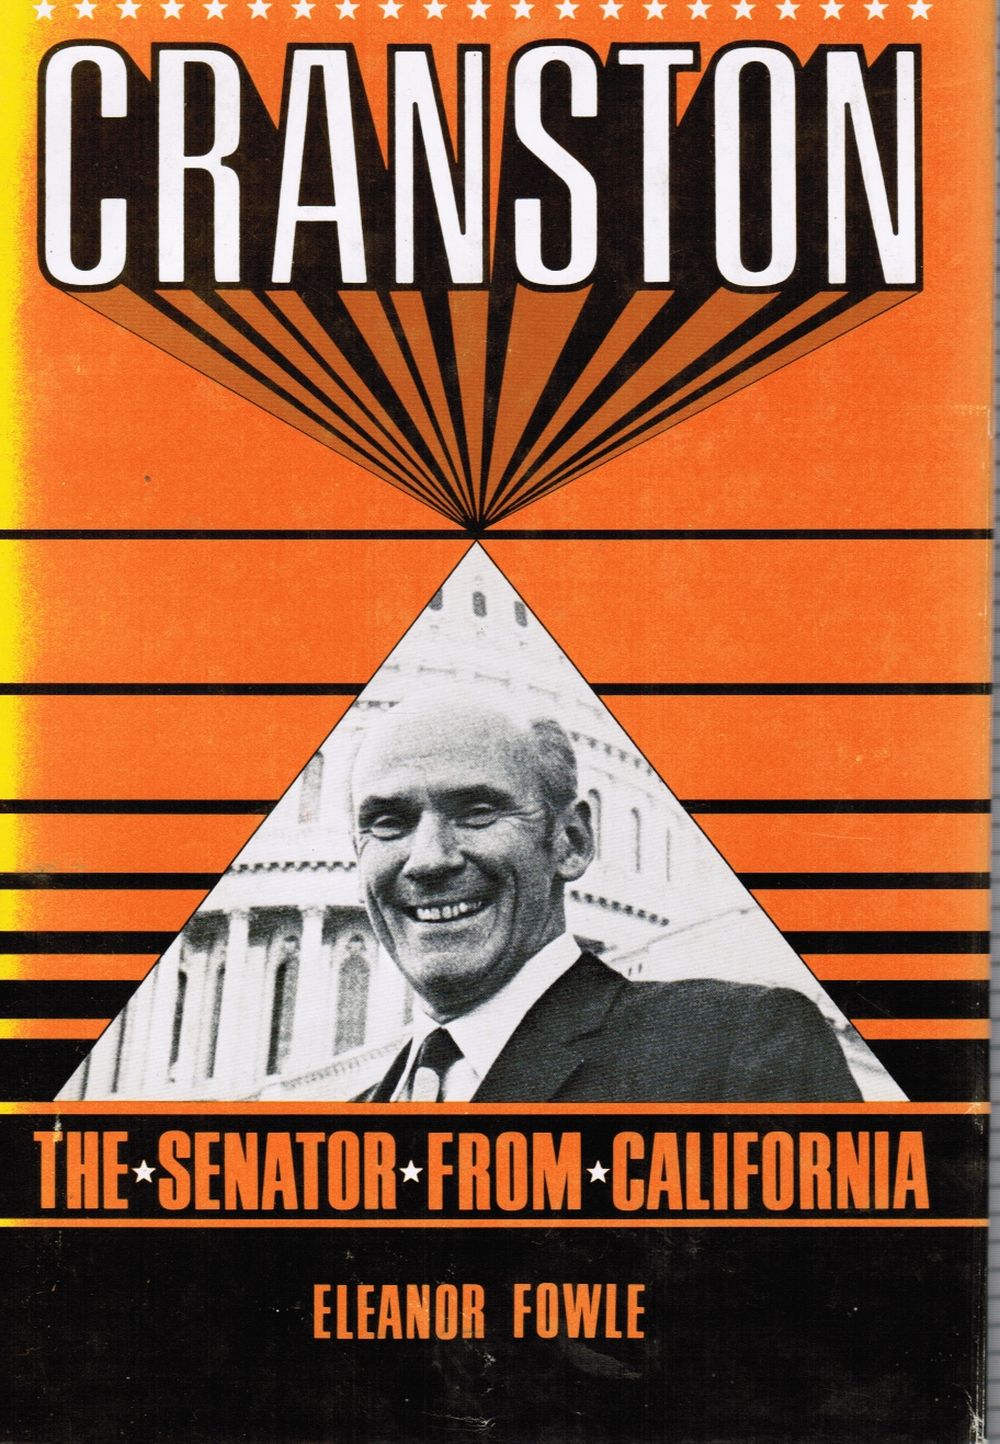 FOWLE, ELEANOR - Cranston: The Senator from California